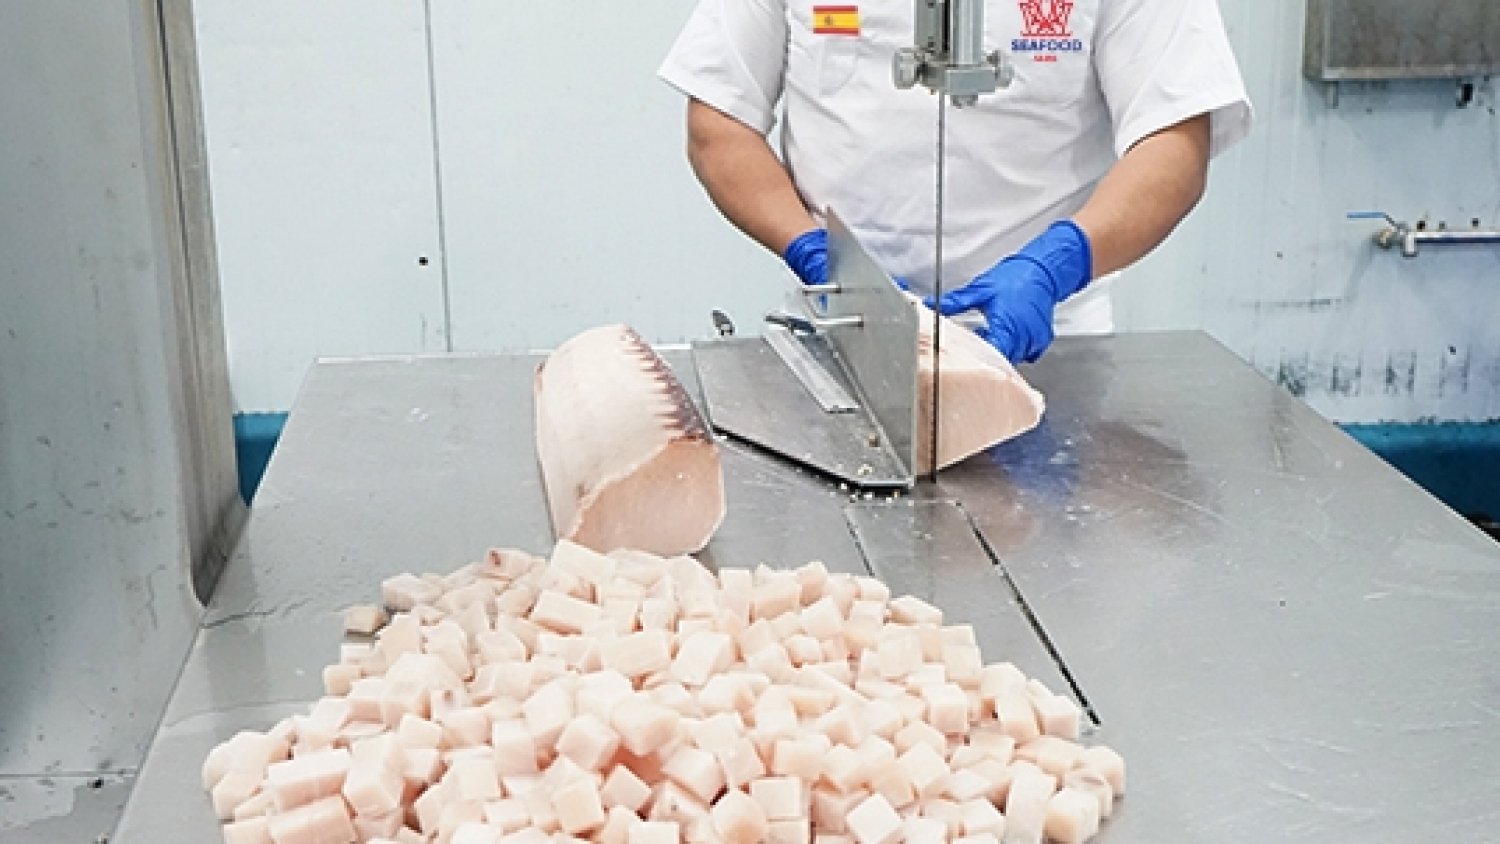 Una empresa malagueña dona 600 kilos de pescado congelado a comedores y entidades sociales